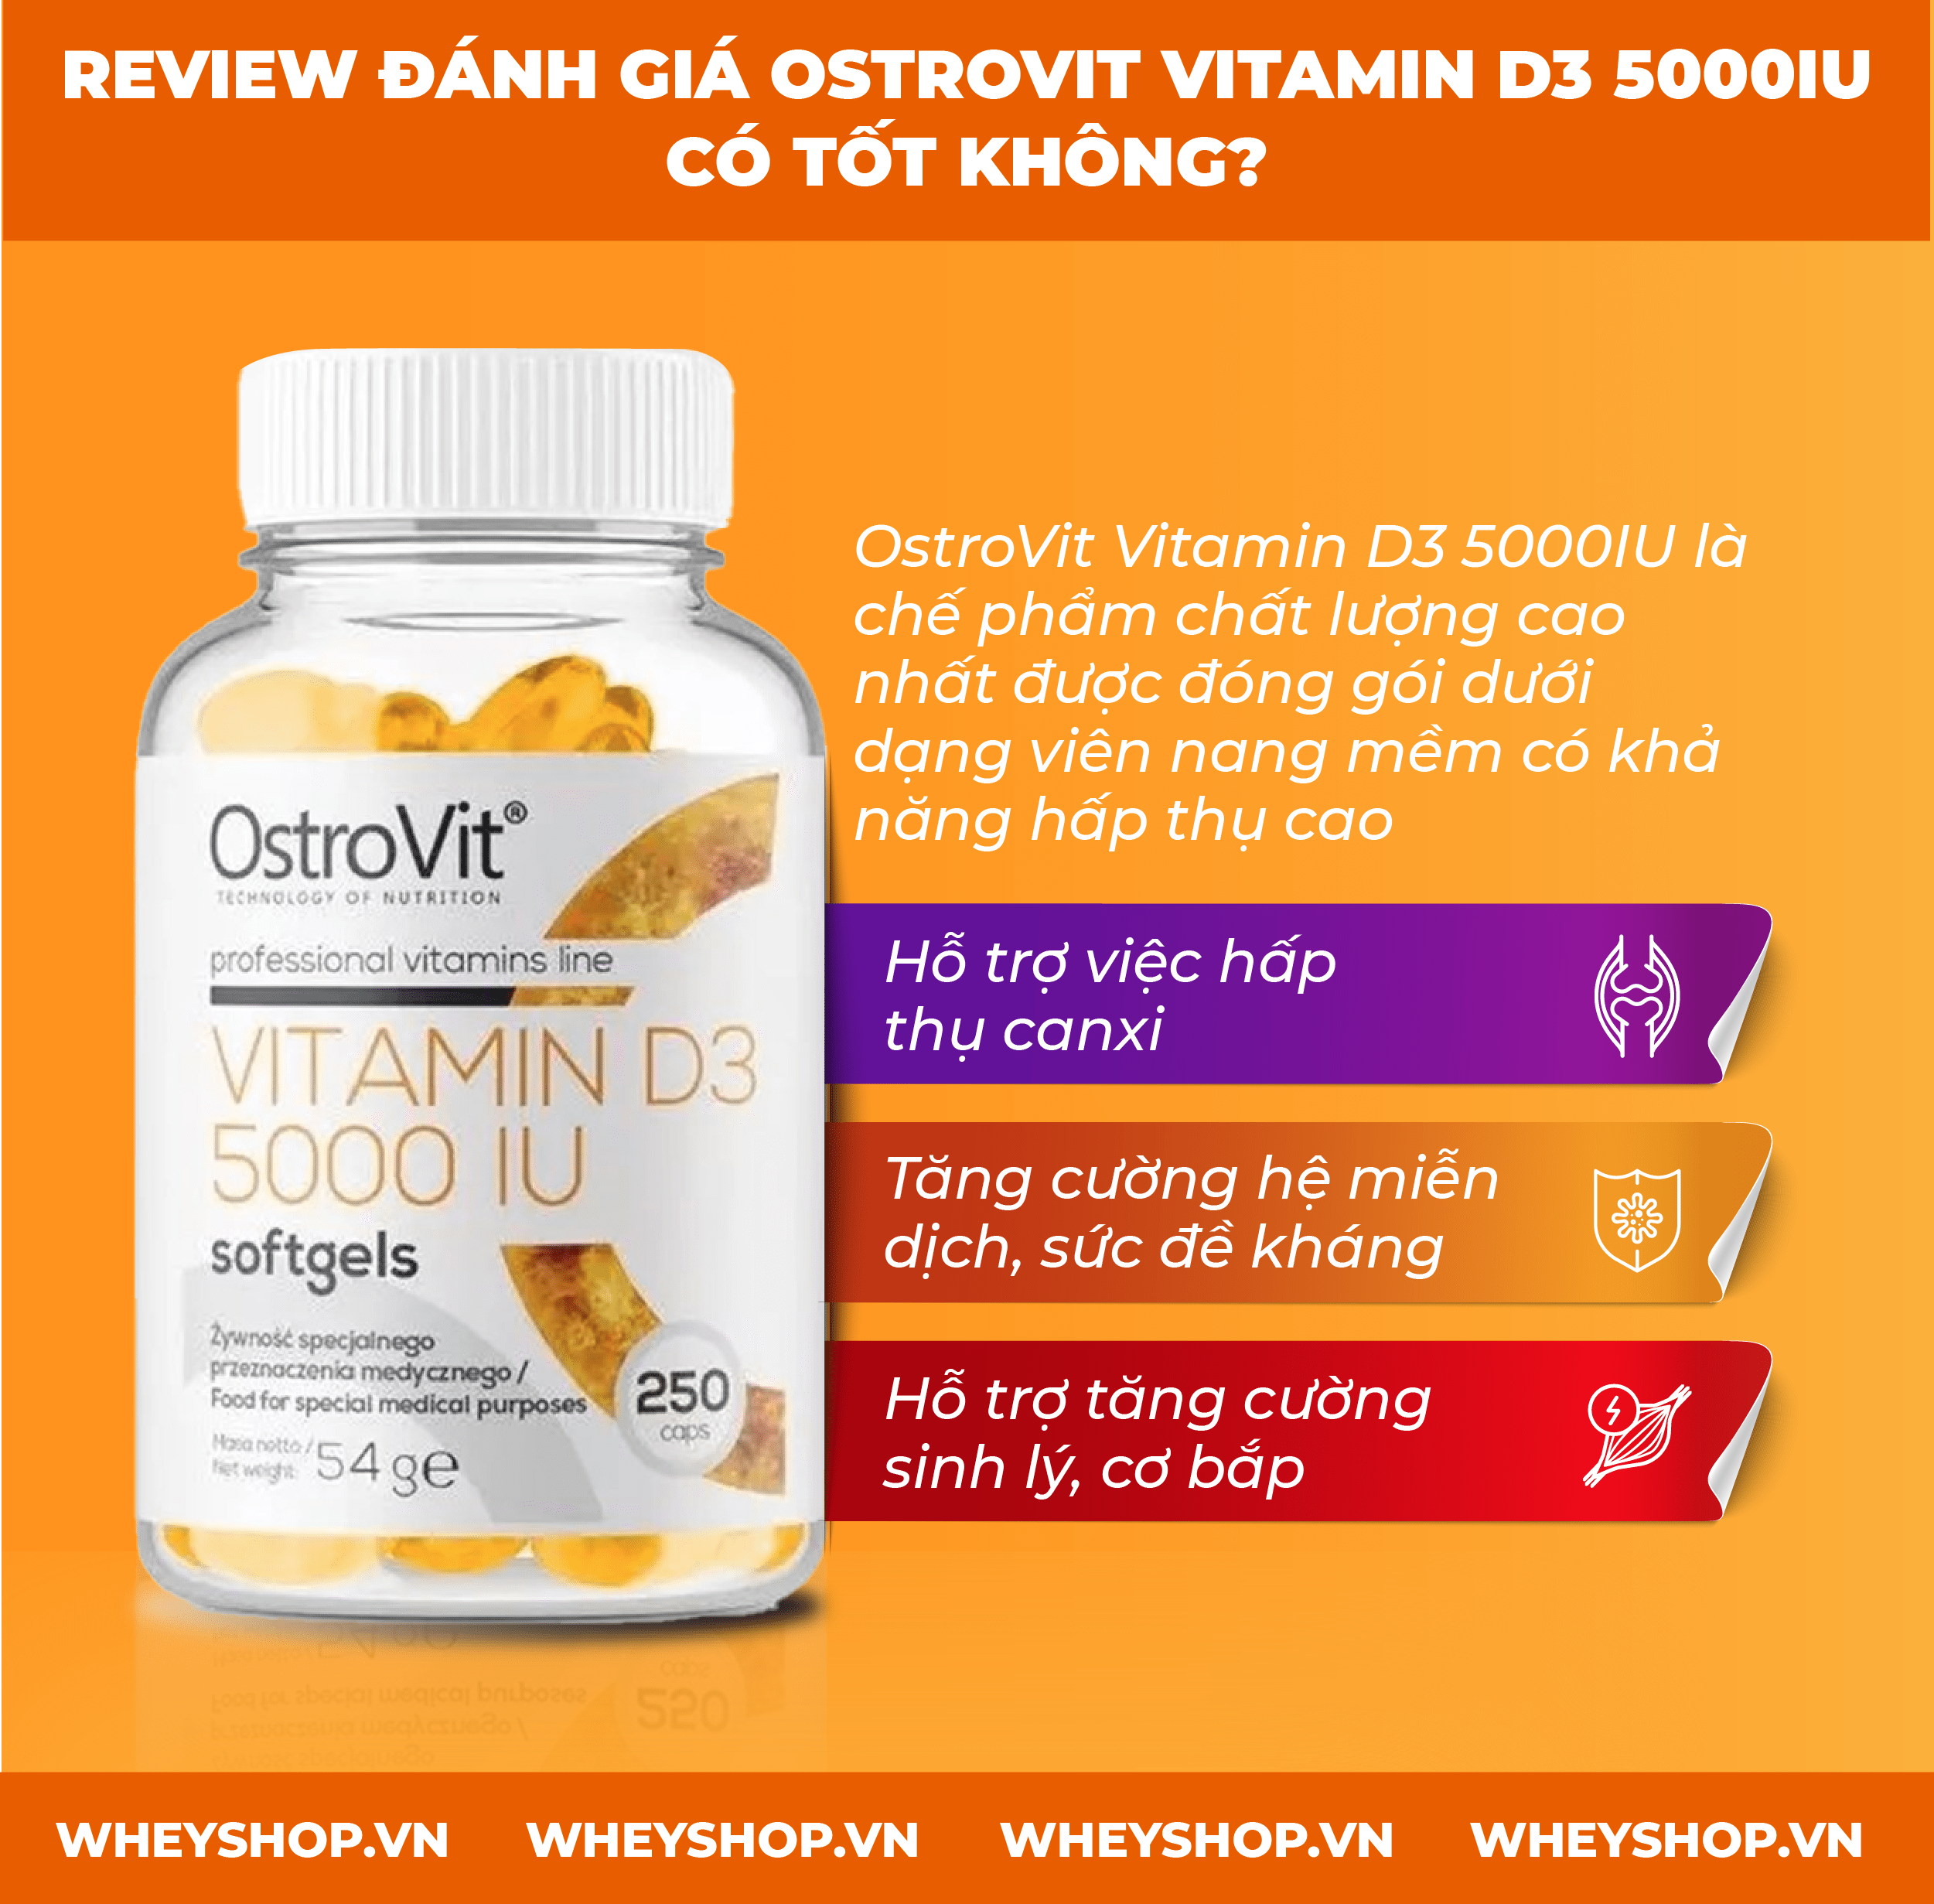 Nếu bạn đang phân vân khi lựa chọn Ostrovit Vitamin D3 5000Iu thì hãy cùng WheyShop review đánh giá Ostrovit Vitamin D3 5000IU có tốt không qua bài viết...